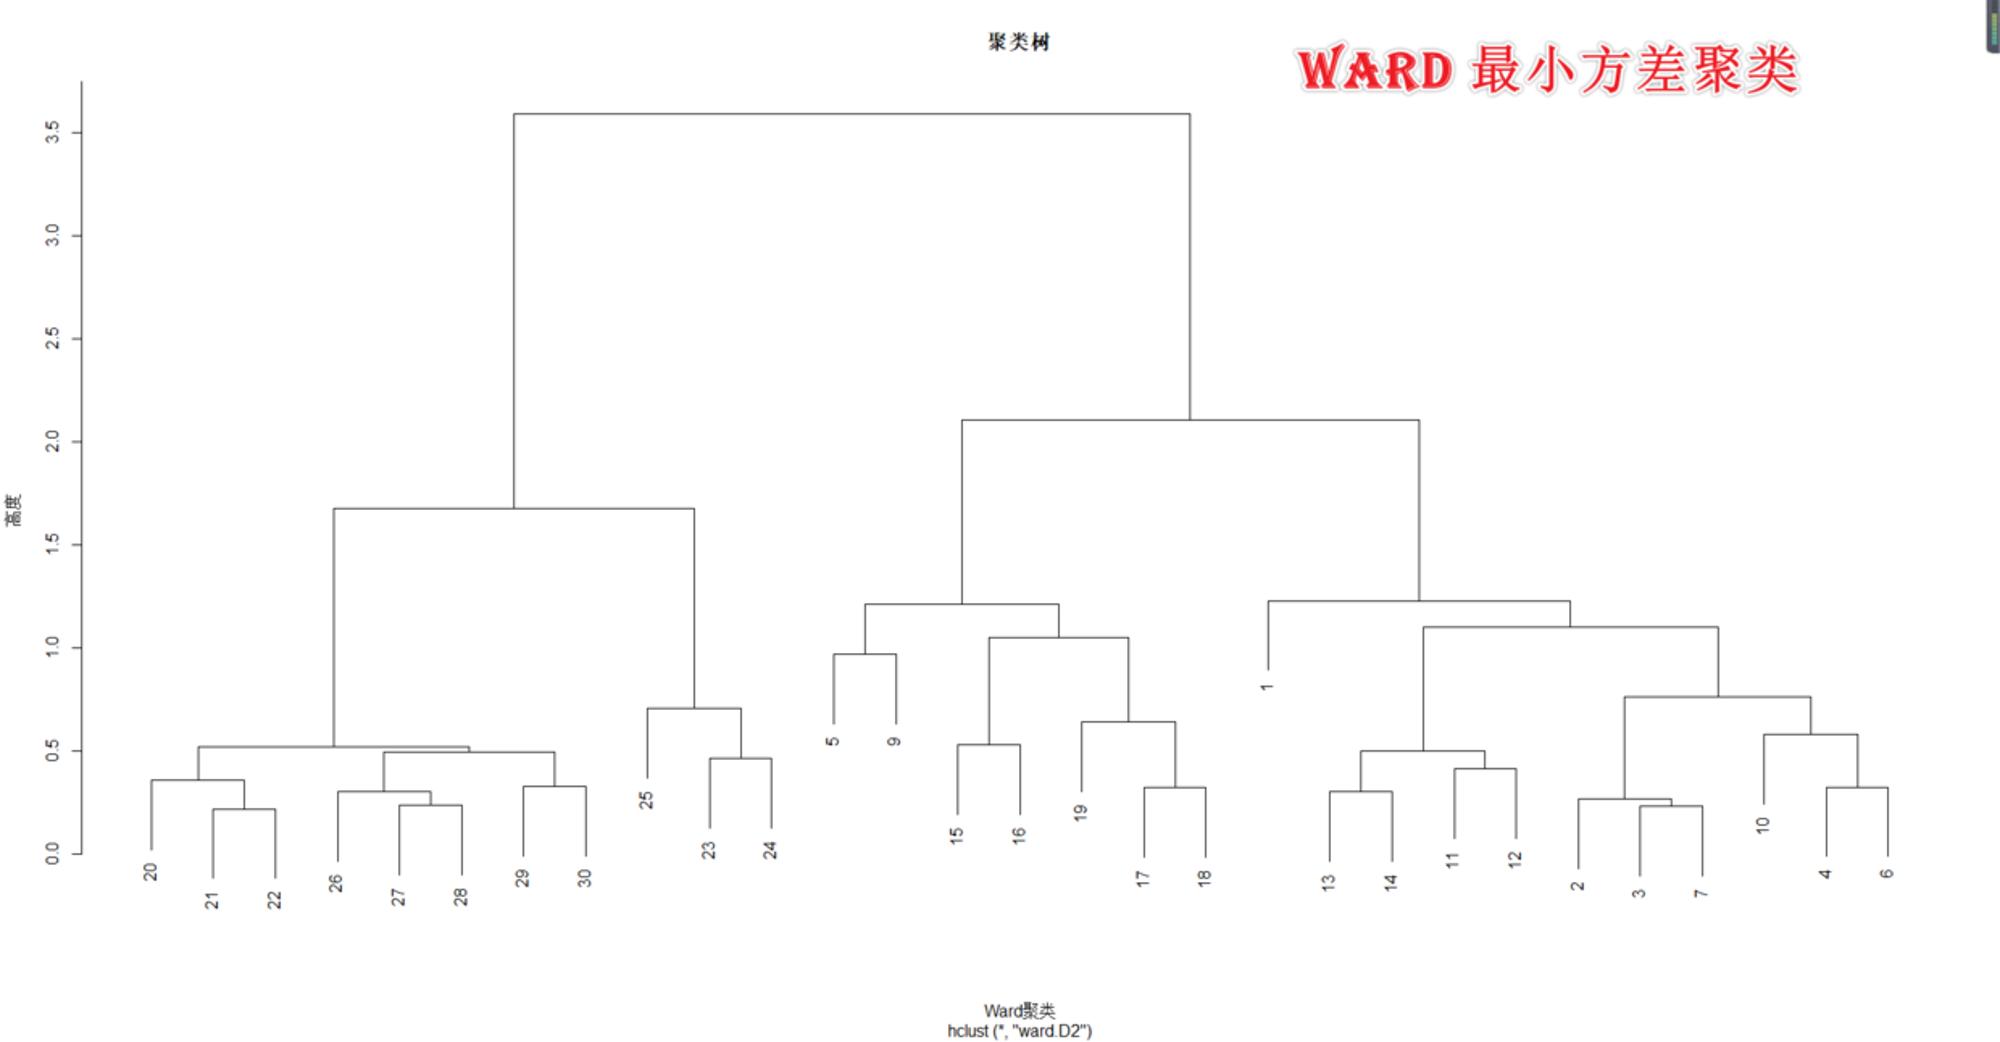 Ward 最小方差聚类